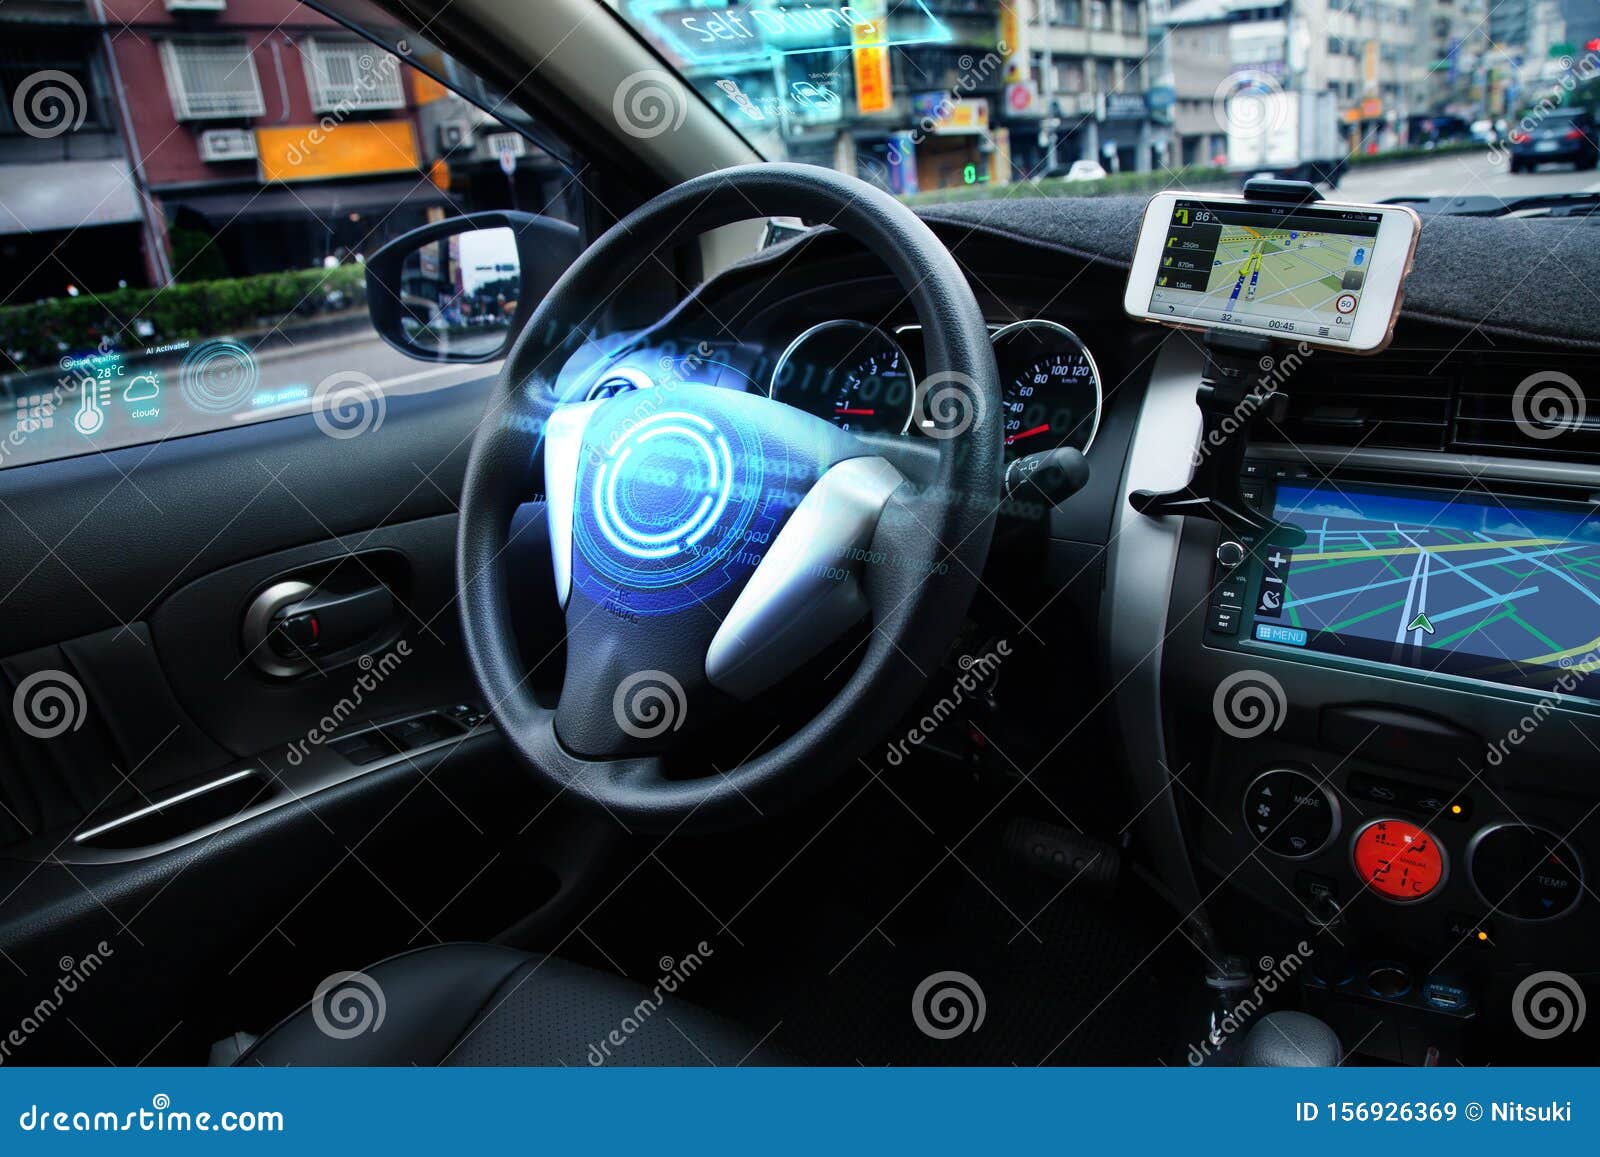 autonomous car, autopilot vehicle and ai with transport concept